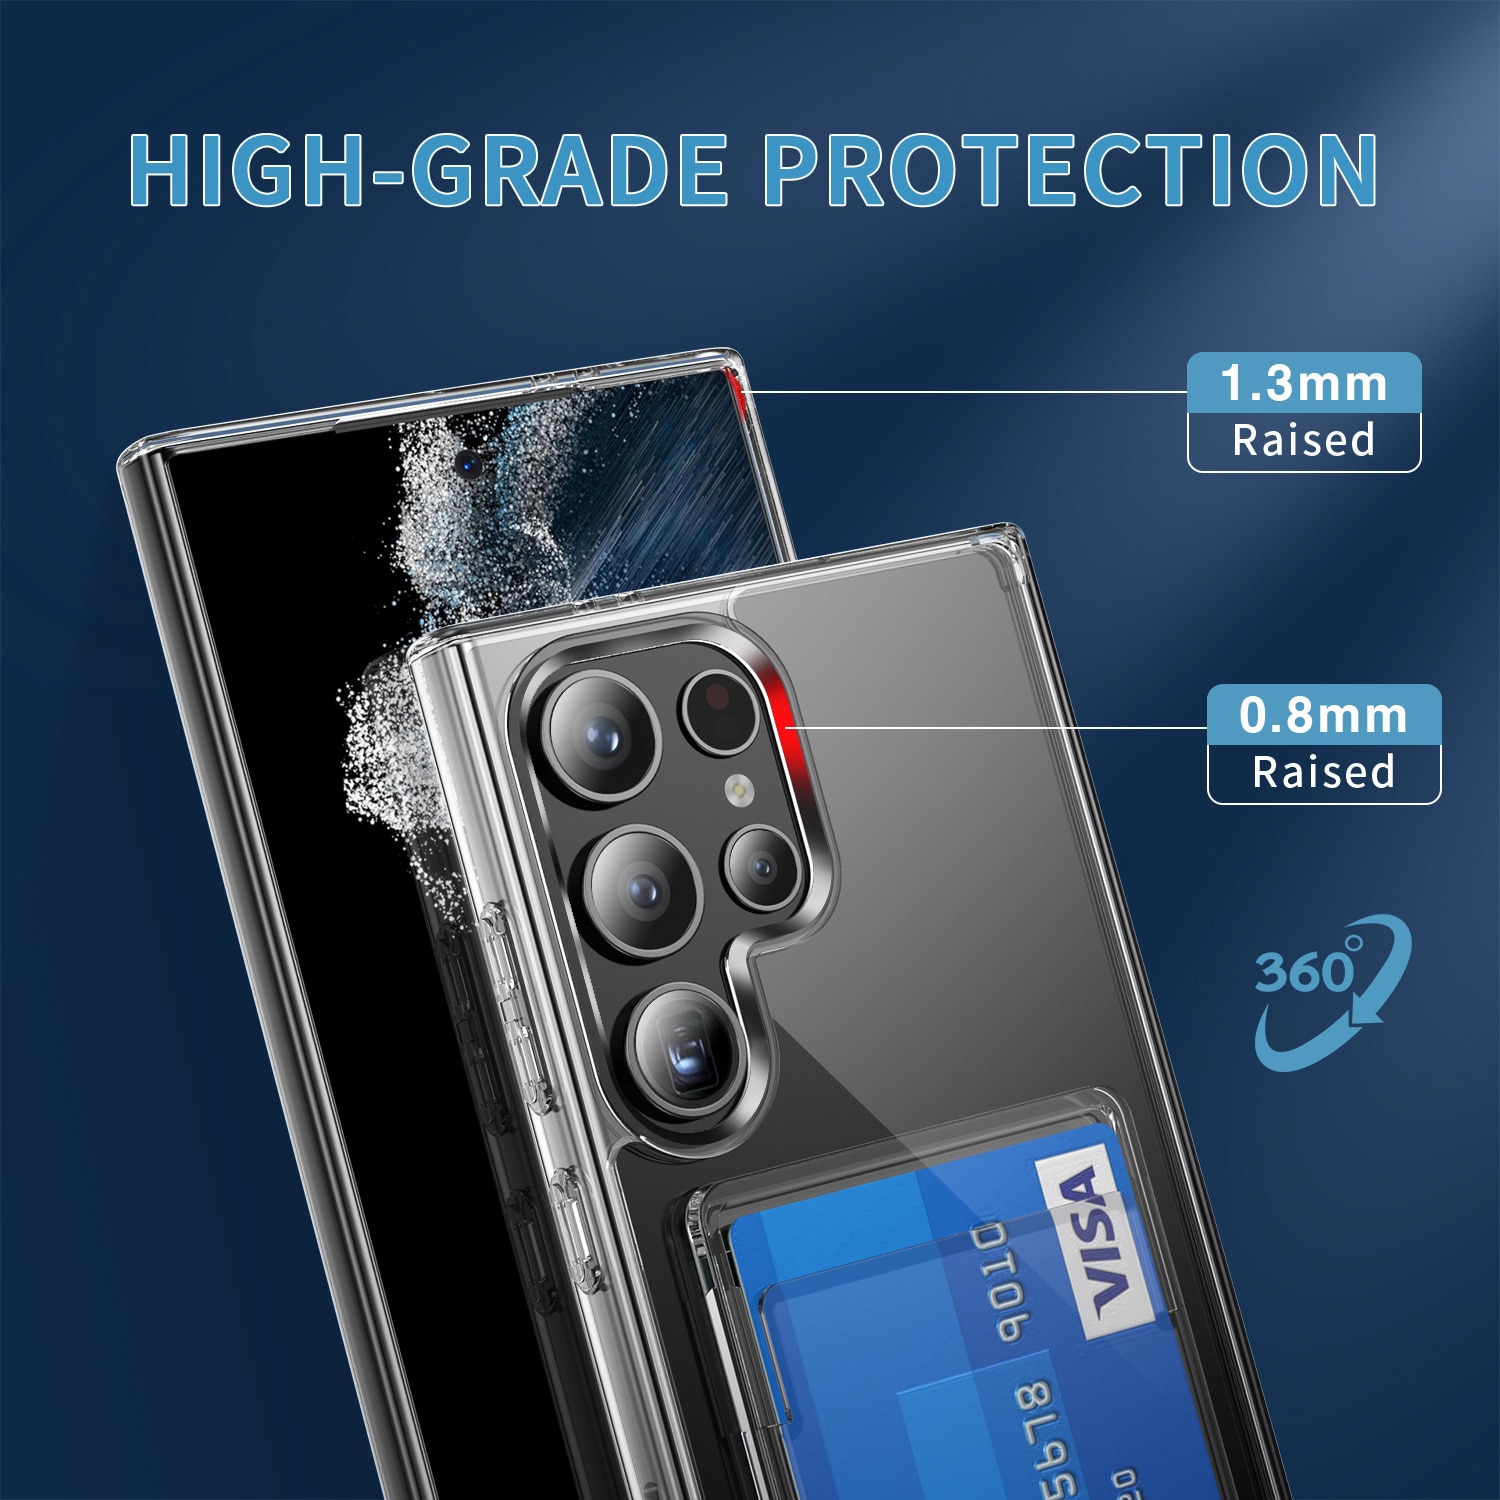 Coque hybride à cartes Samsung Galaxy S24 Ultra, transparent